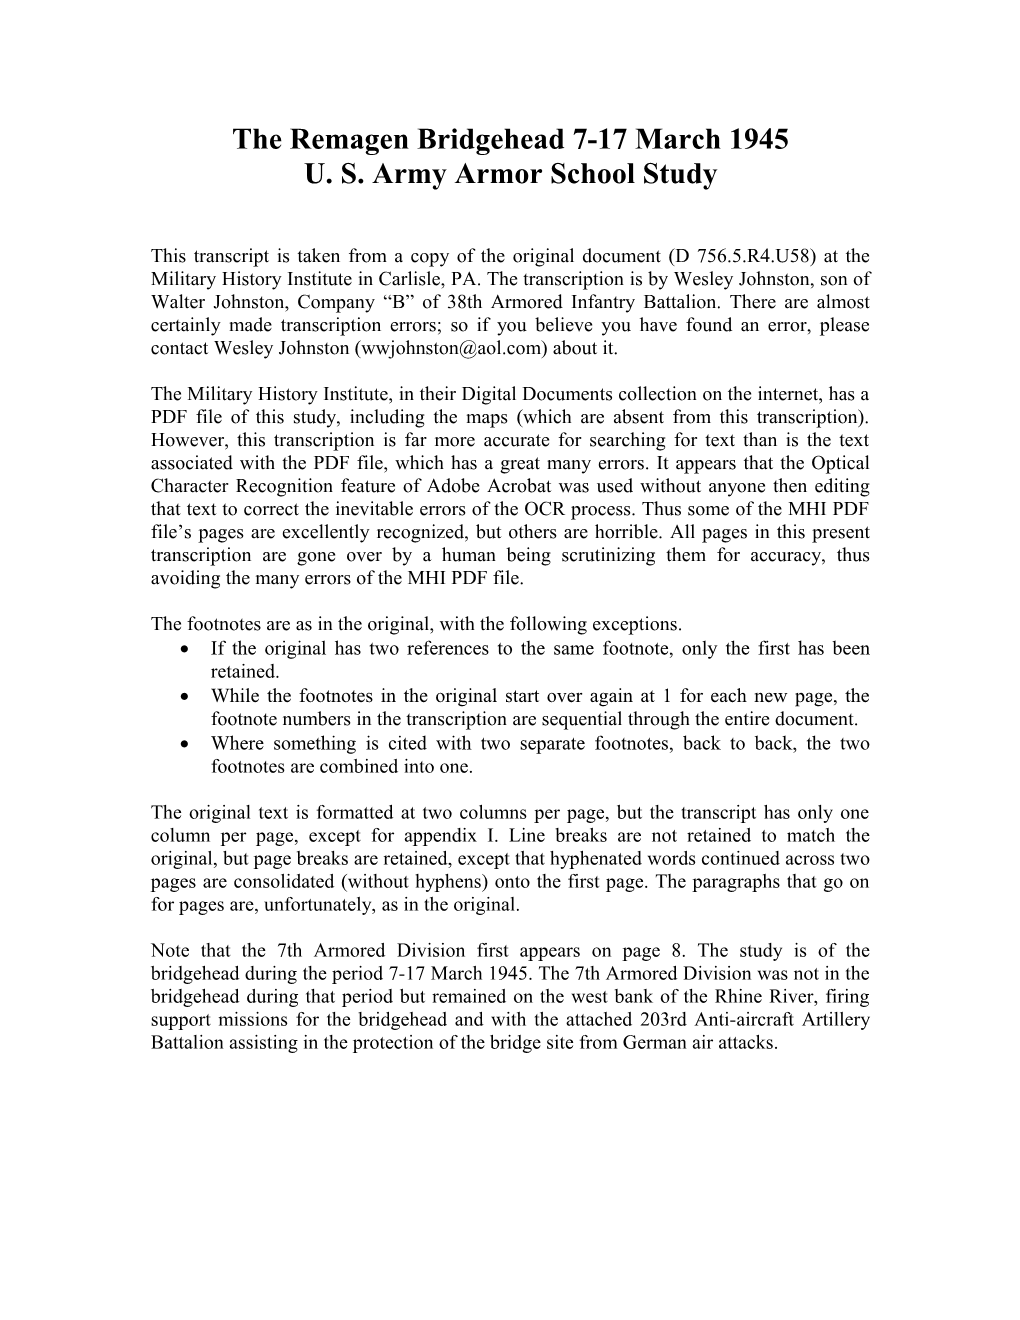 U. S. Army Armor School Study